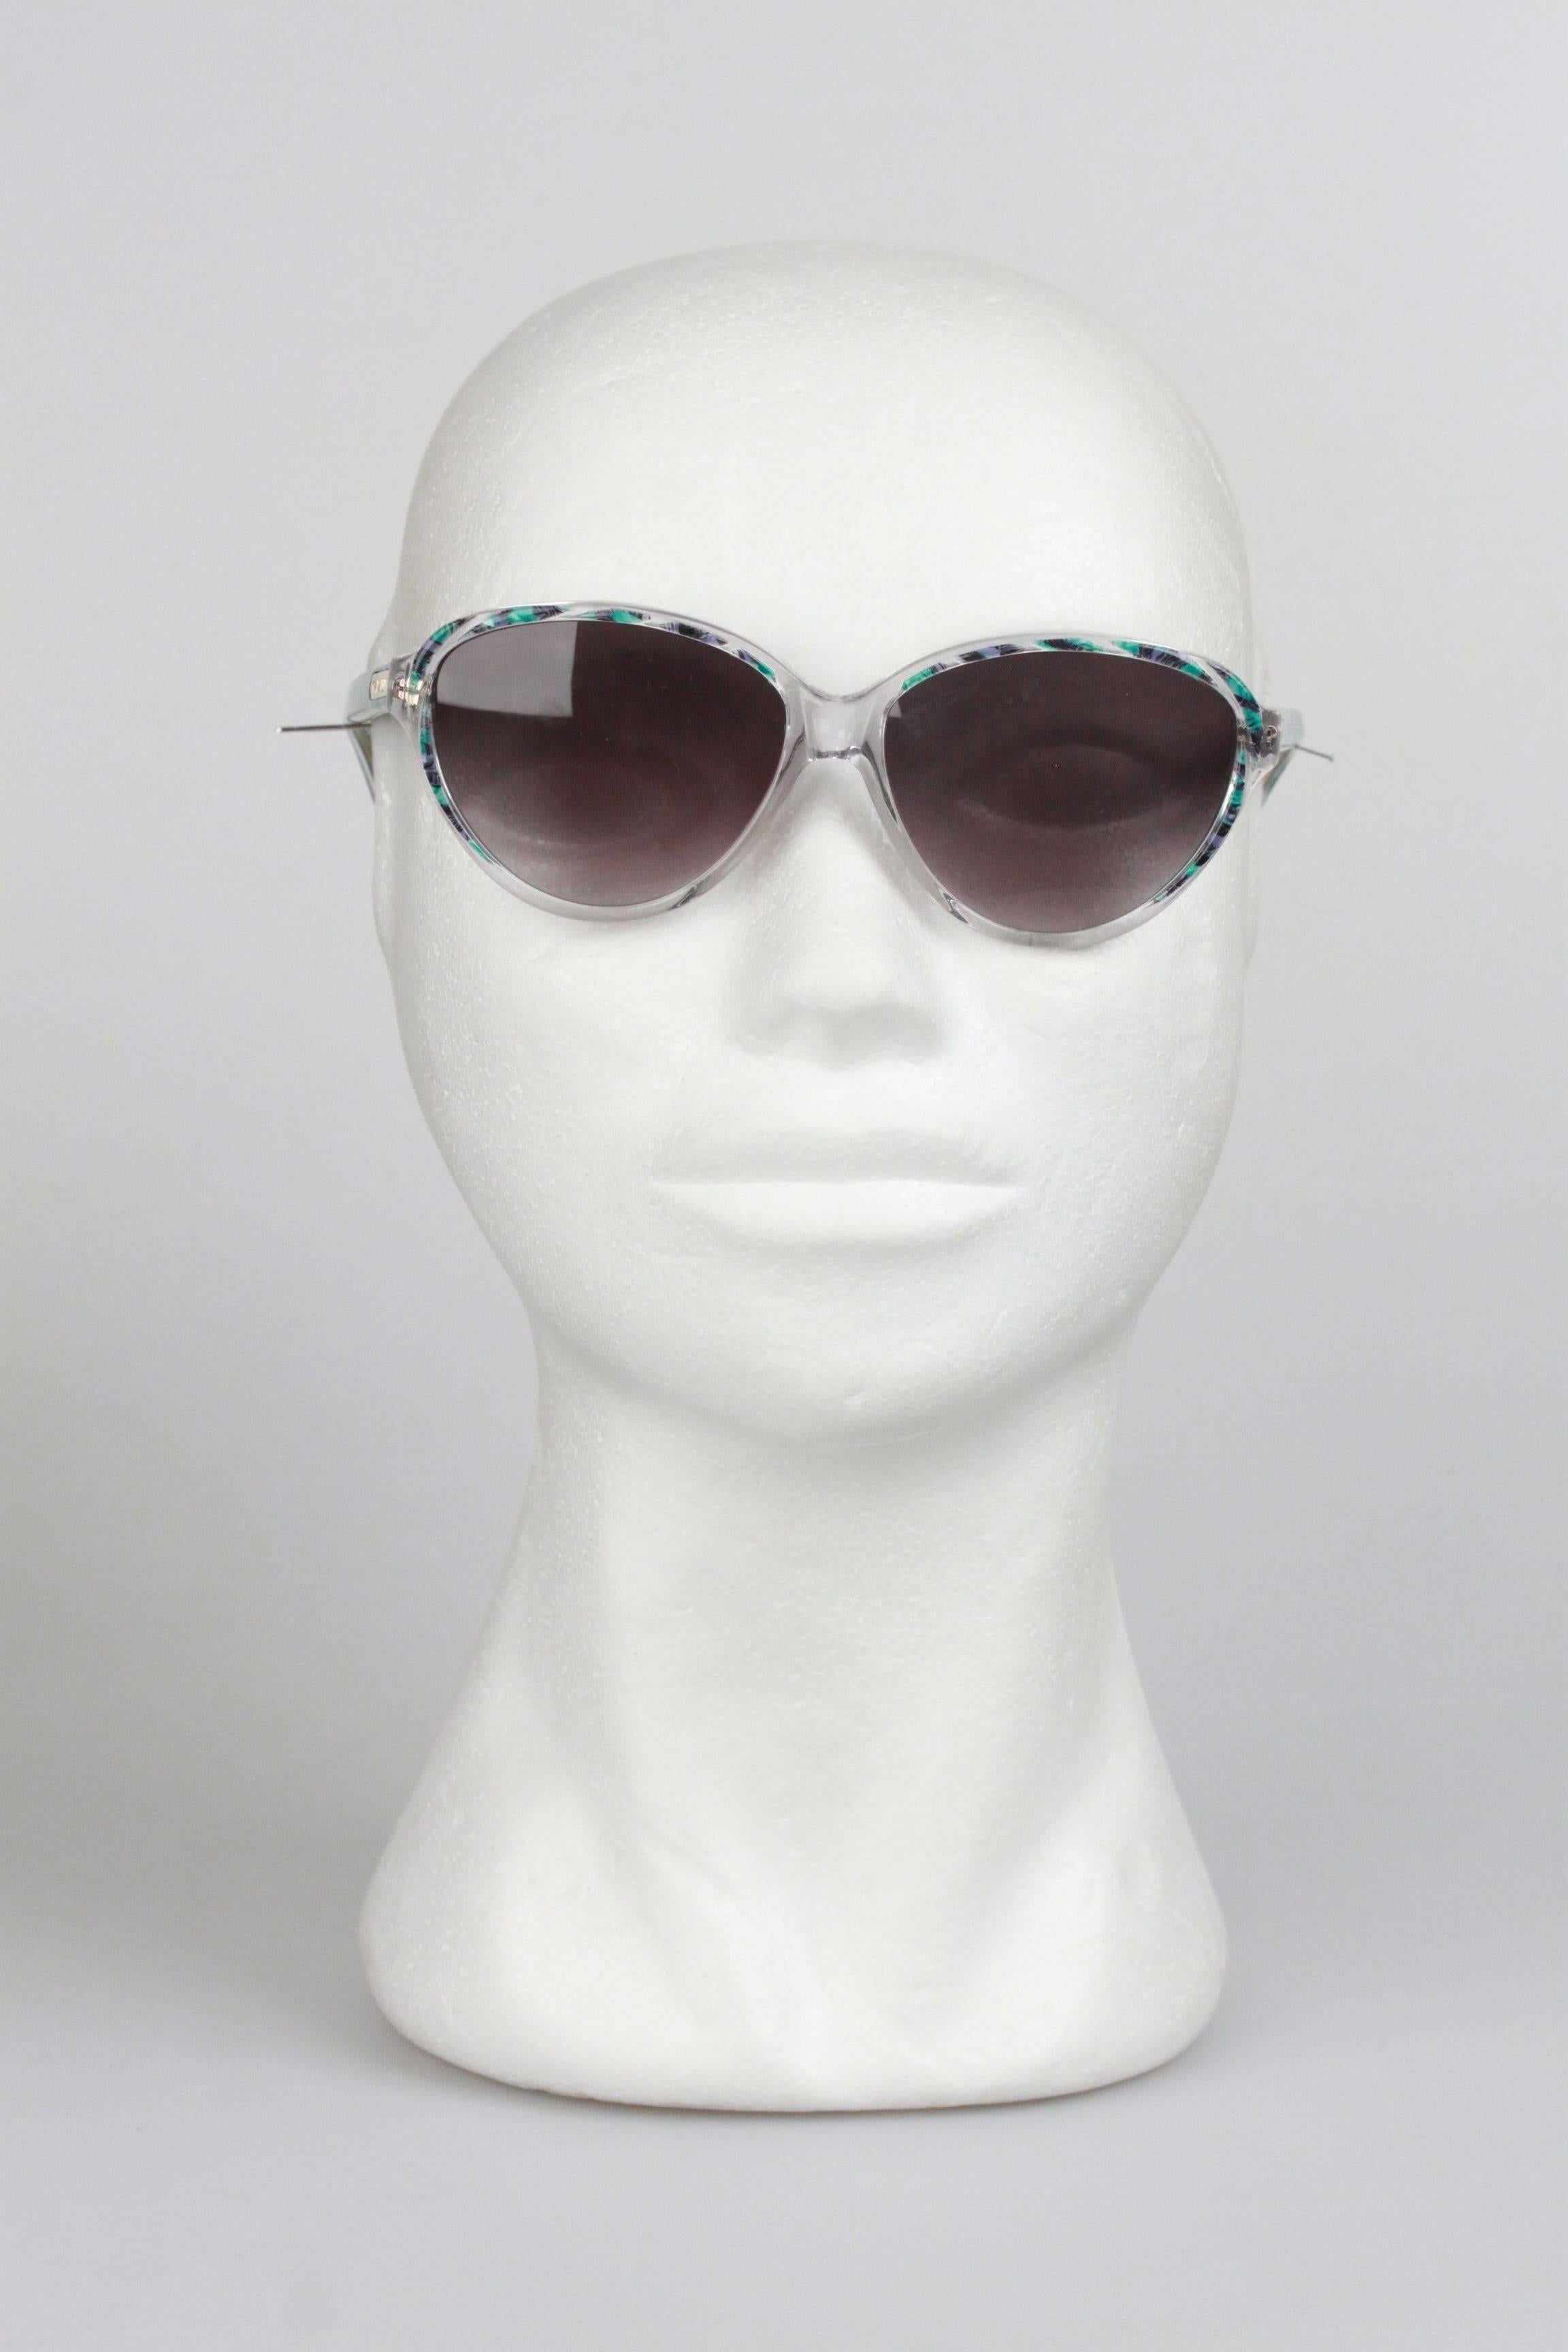 YVES SAINT LAURENT Vintage MINT Multicolor Sunglasses ARION 54mm 4